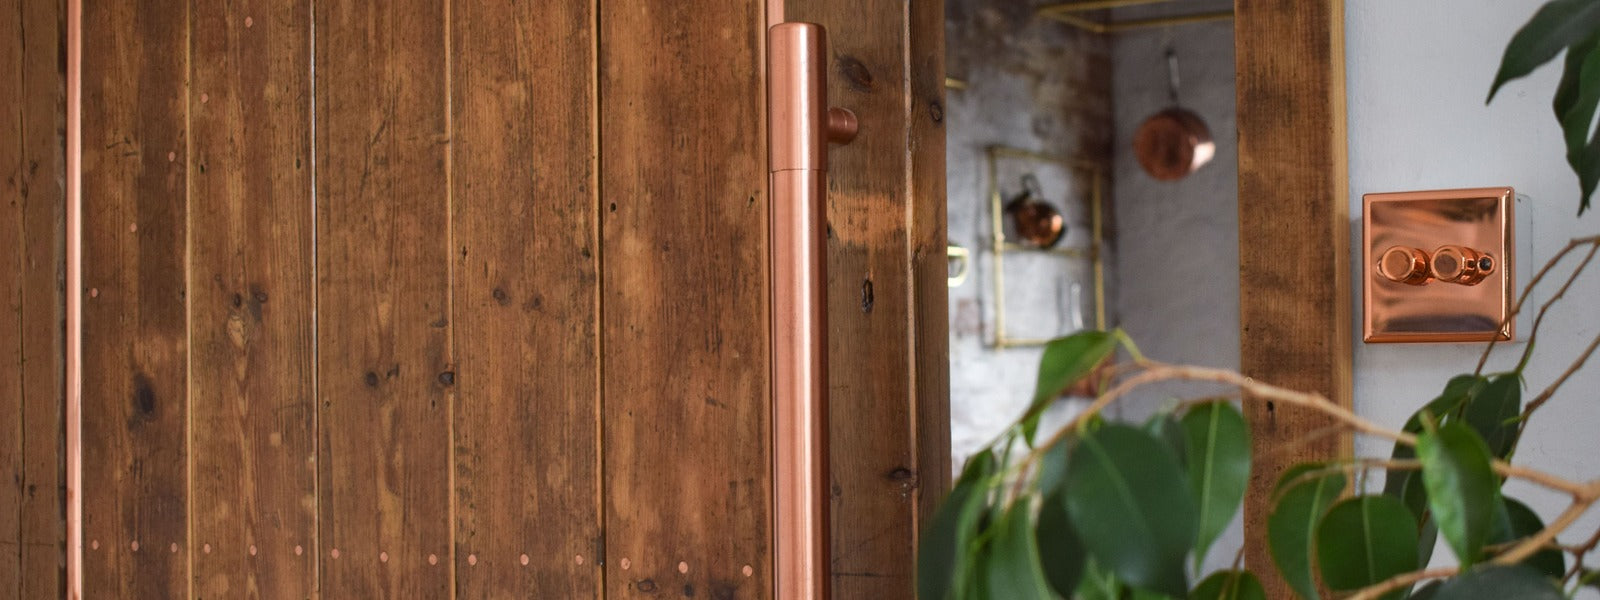 copper front door handle on a sliding wooden door